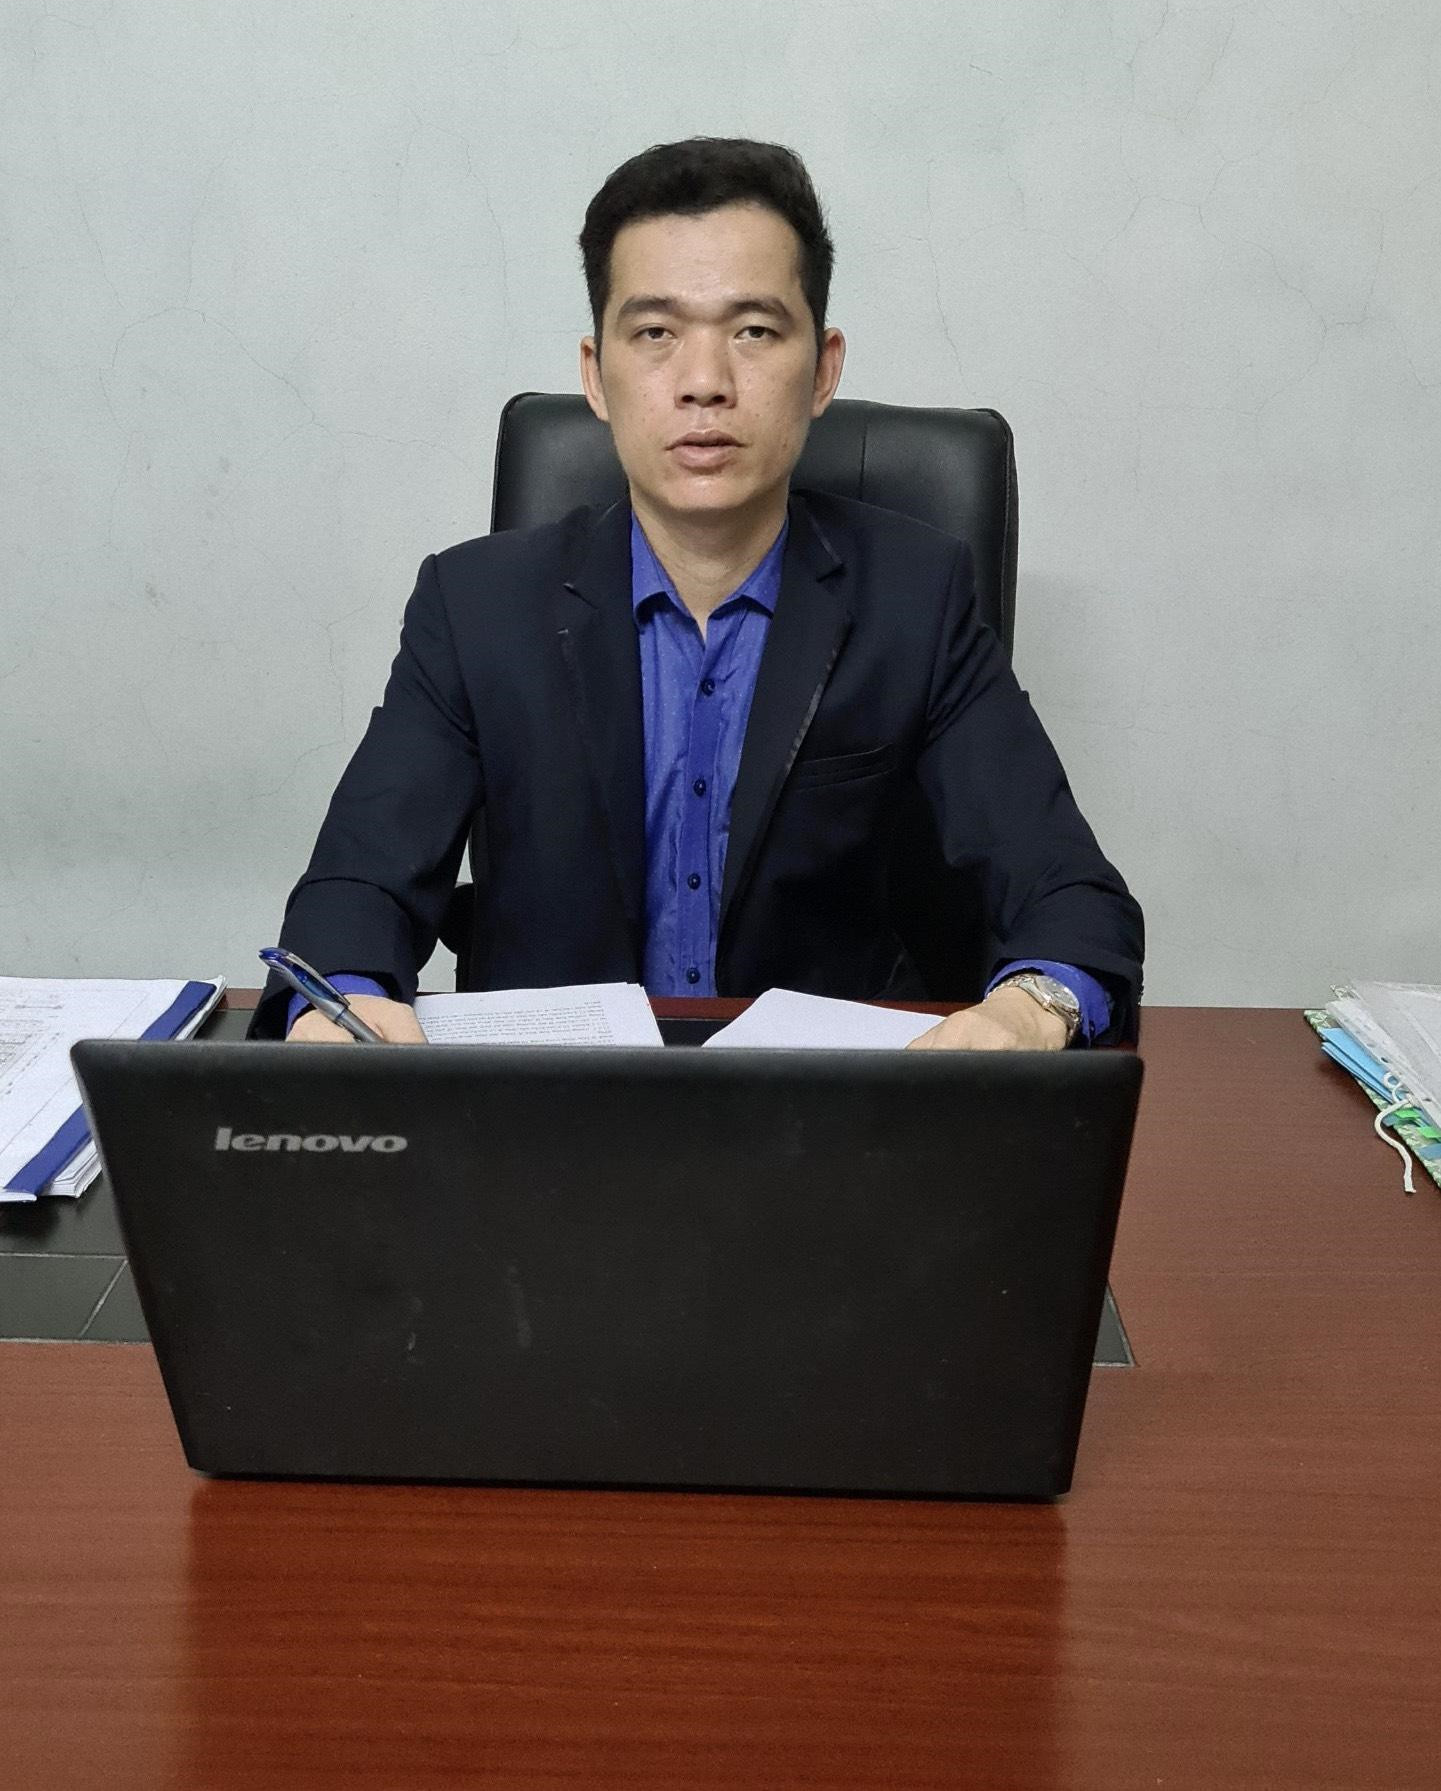 CEO trẻ Nguyễn Văn Hùng: Quyết liệt trong kinh doanh và đam mê thiện nguyện - 2